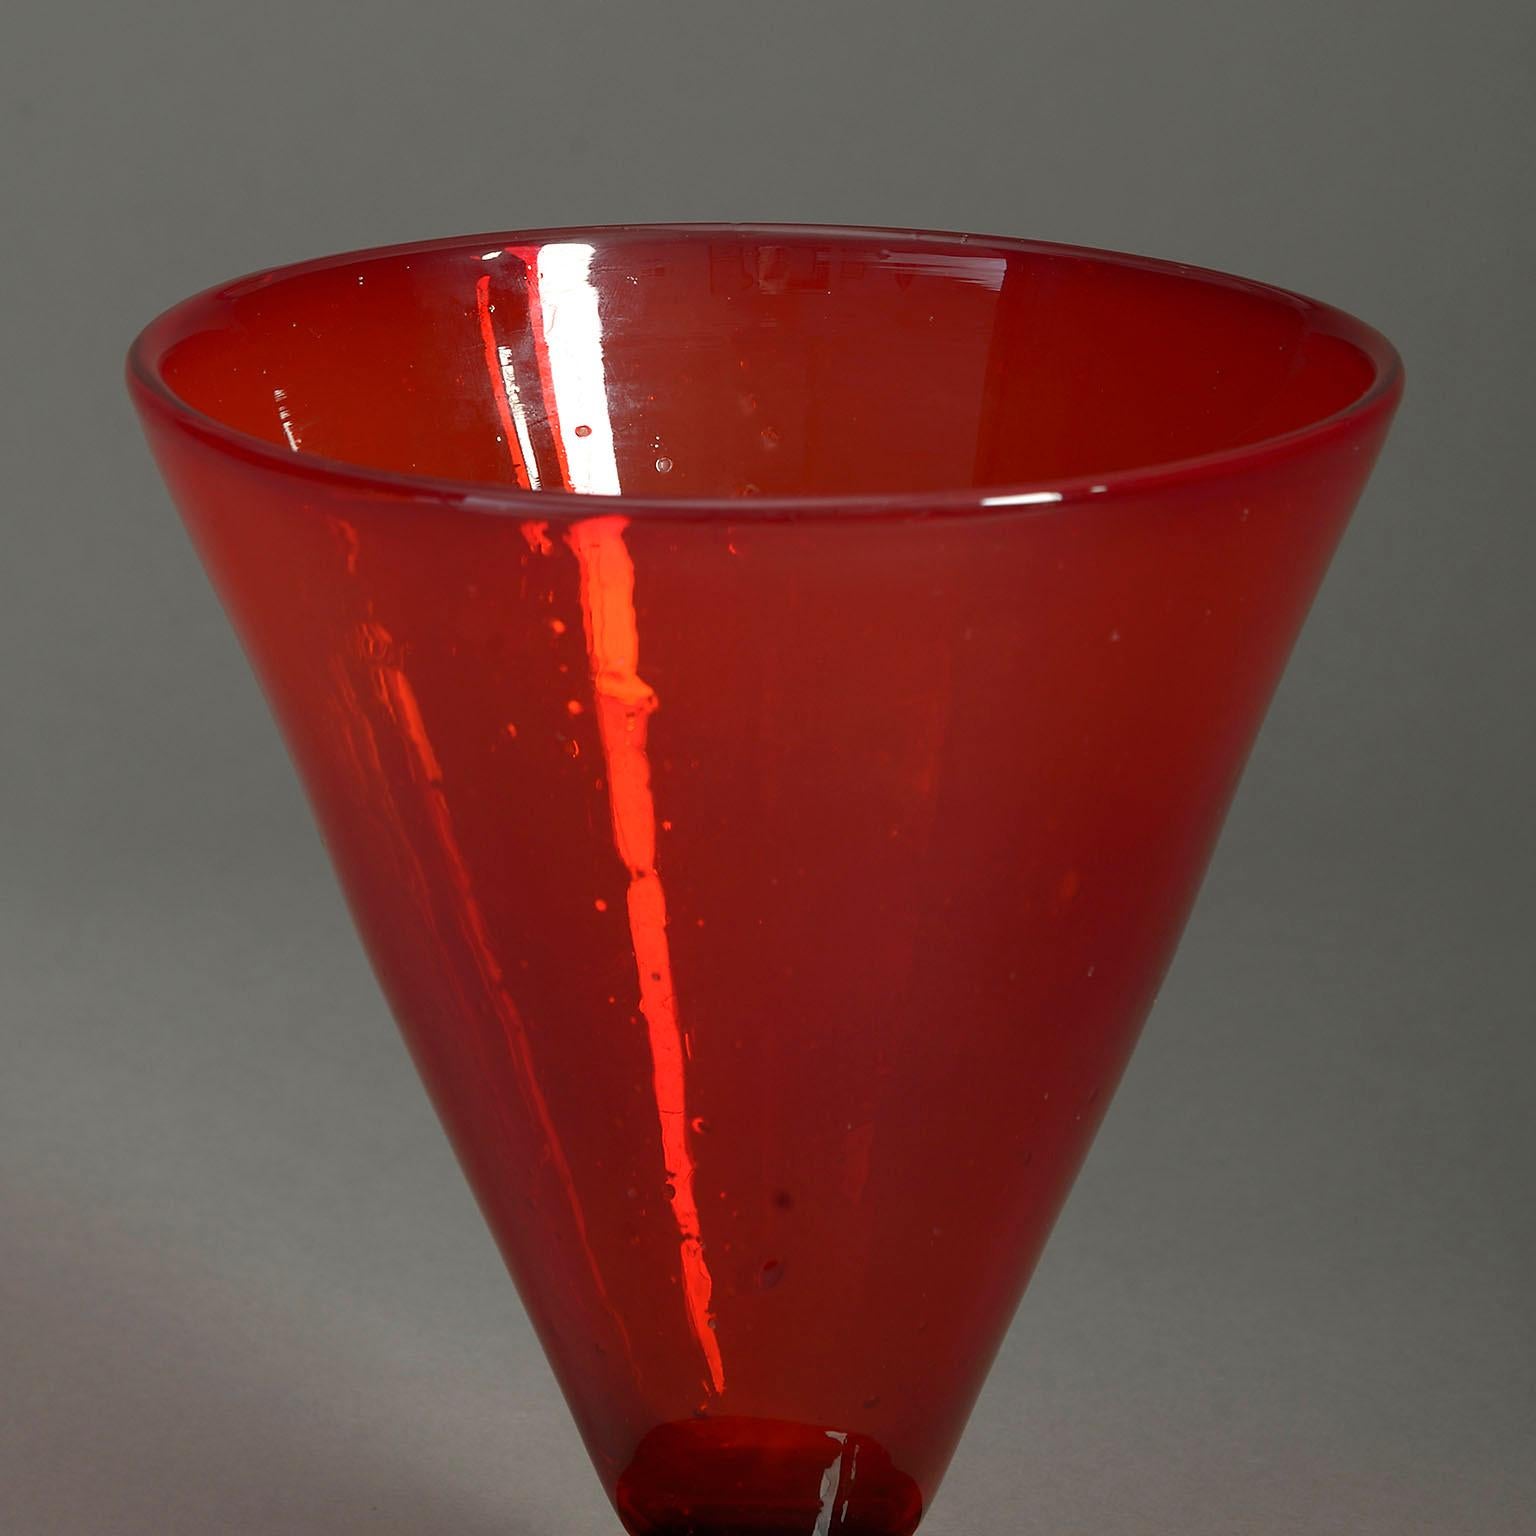 Brillantrote Glasvase aus dem frühen 20. Jahrhundert, konisch geformt, mit rundem Fuß.

